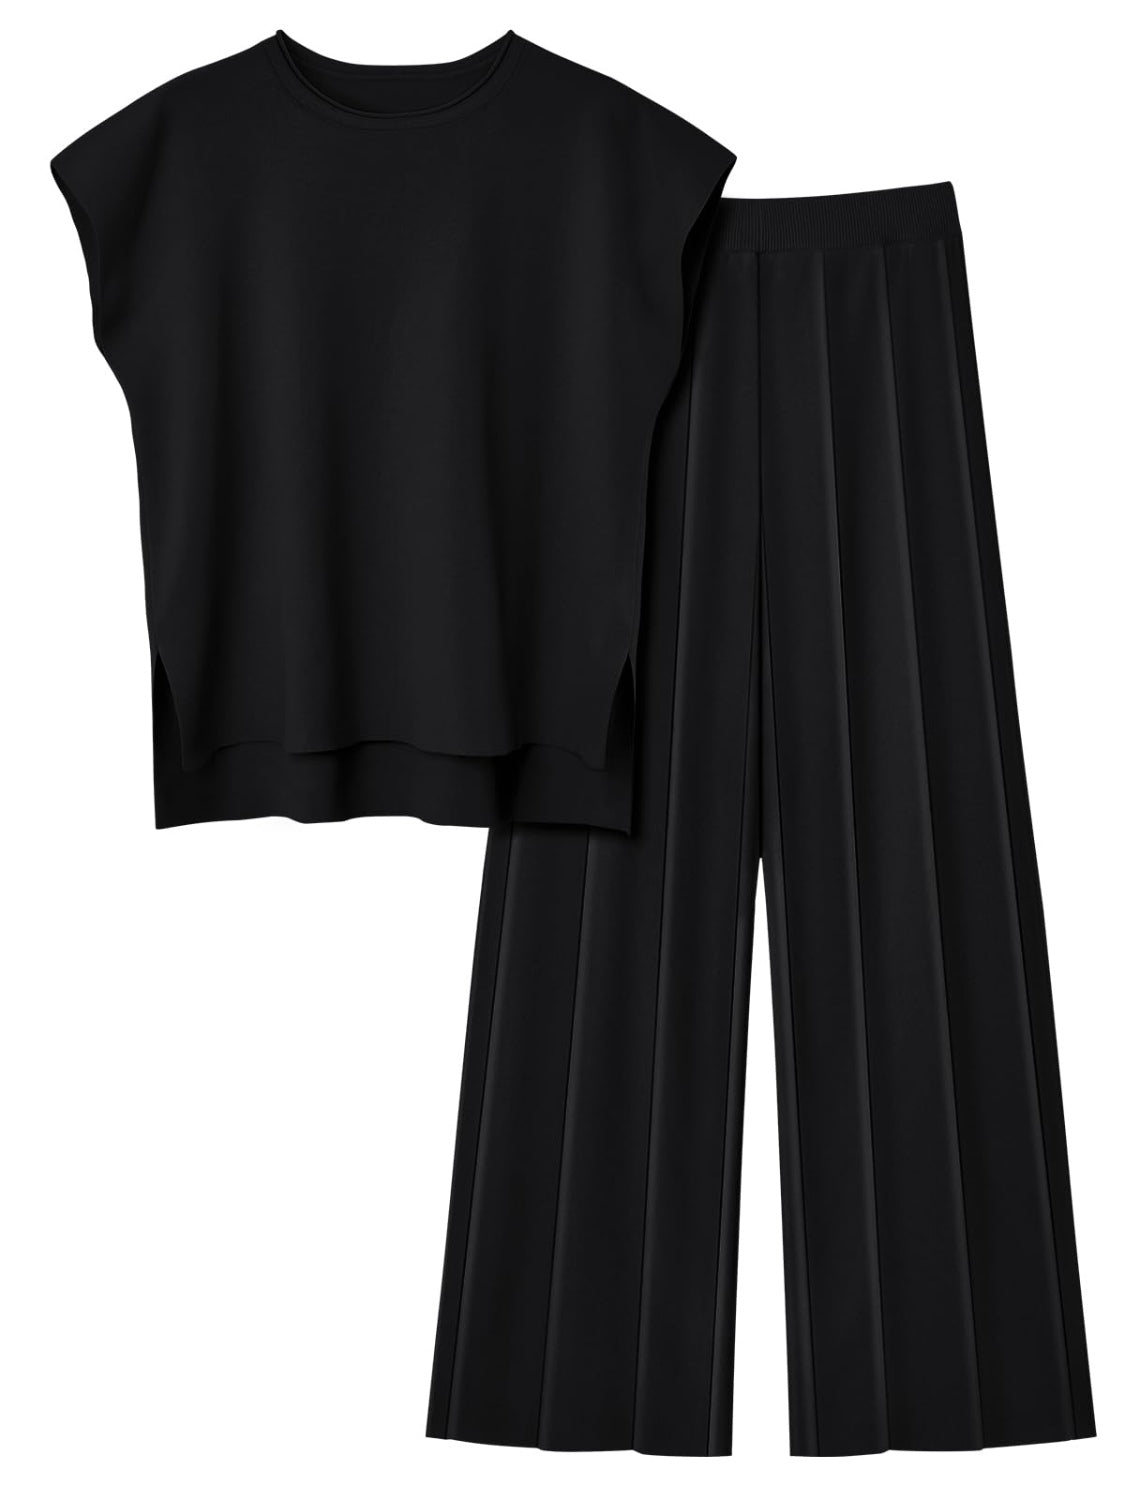 TEEK - Round Neck Cap Sleeve Top Pants Knit Set SET TEEK Trend Black S 